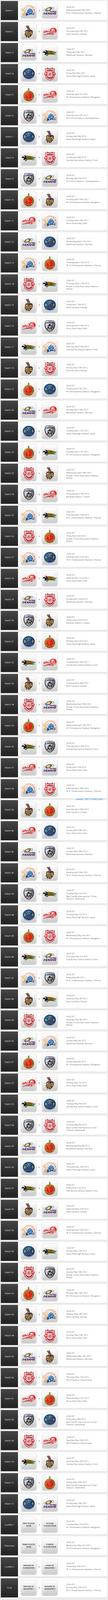 IPL 2012 Full Schedule